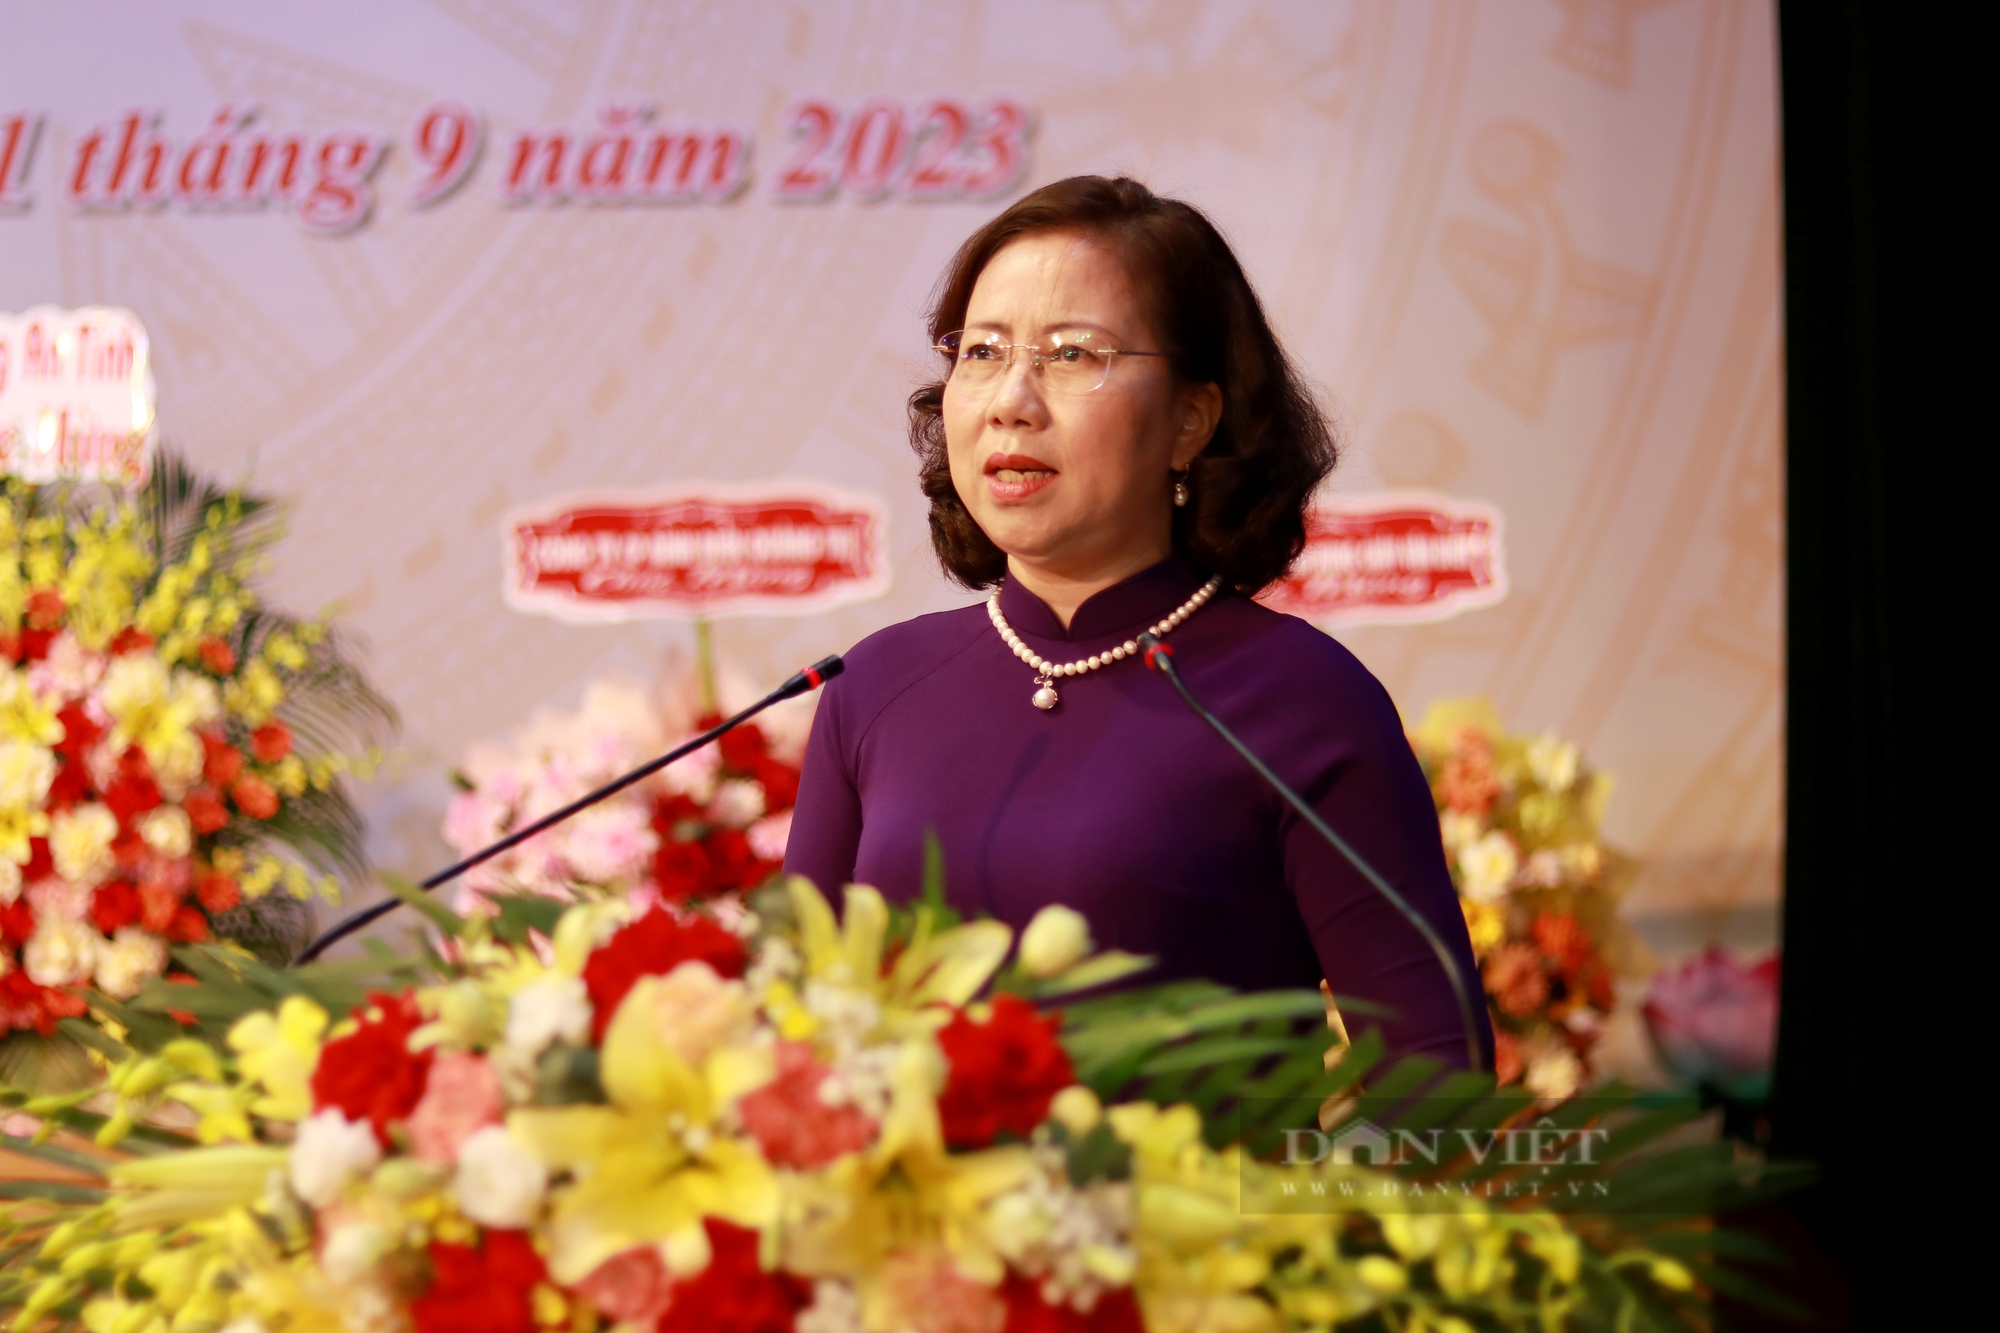 Phó Chủ tịch Hội NDVN Bùi Thị Thơm: Hà Tĩnh có nhiều cách làm hay, mô hình tốt về xây dựng nông thôn mới- Ảnh 3.